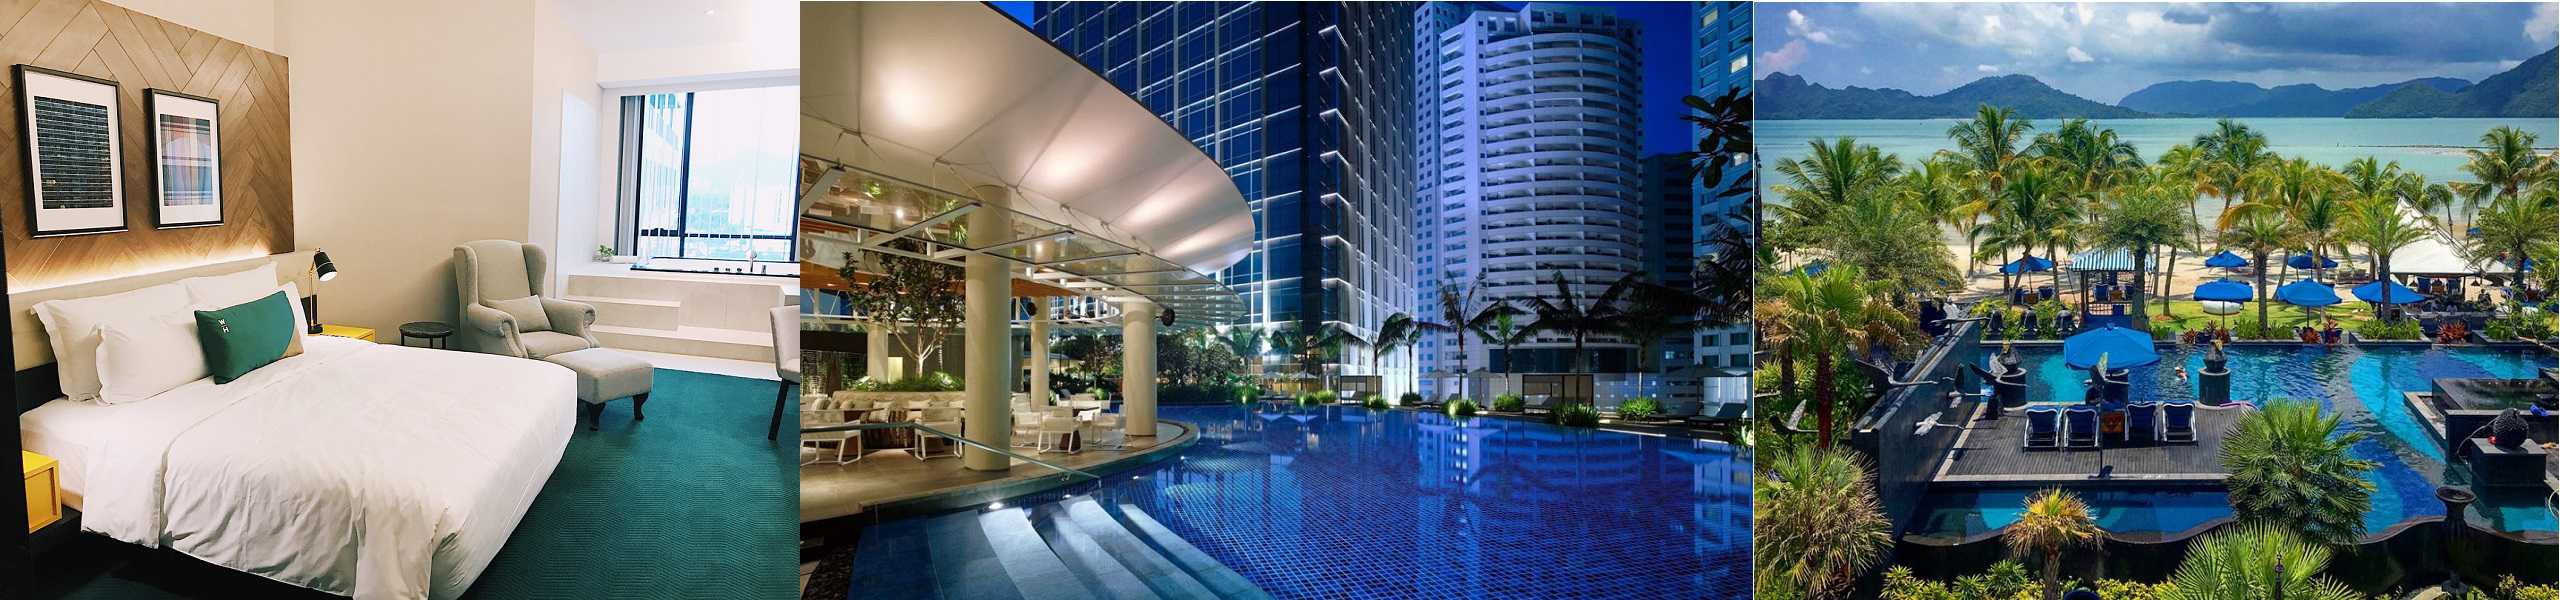 Nơi ở - khách sạn ở Malaysia. Tư vấn lựa chọn khách sạn, nhà nghỉ, resort ở Malaysia từ cao cấp tới bình dân, giá rẻ